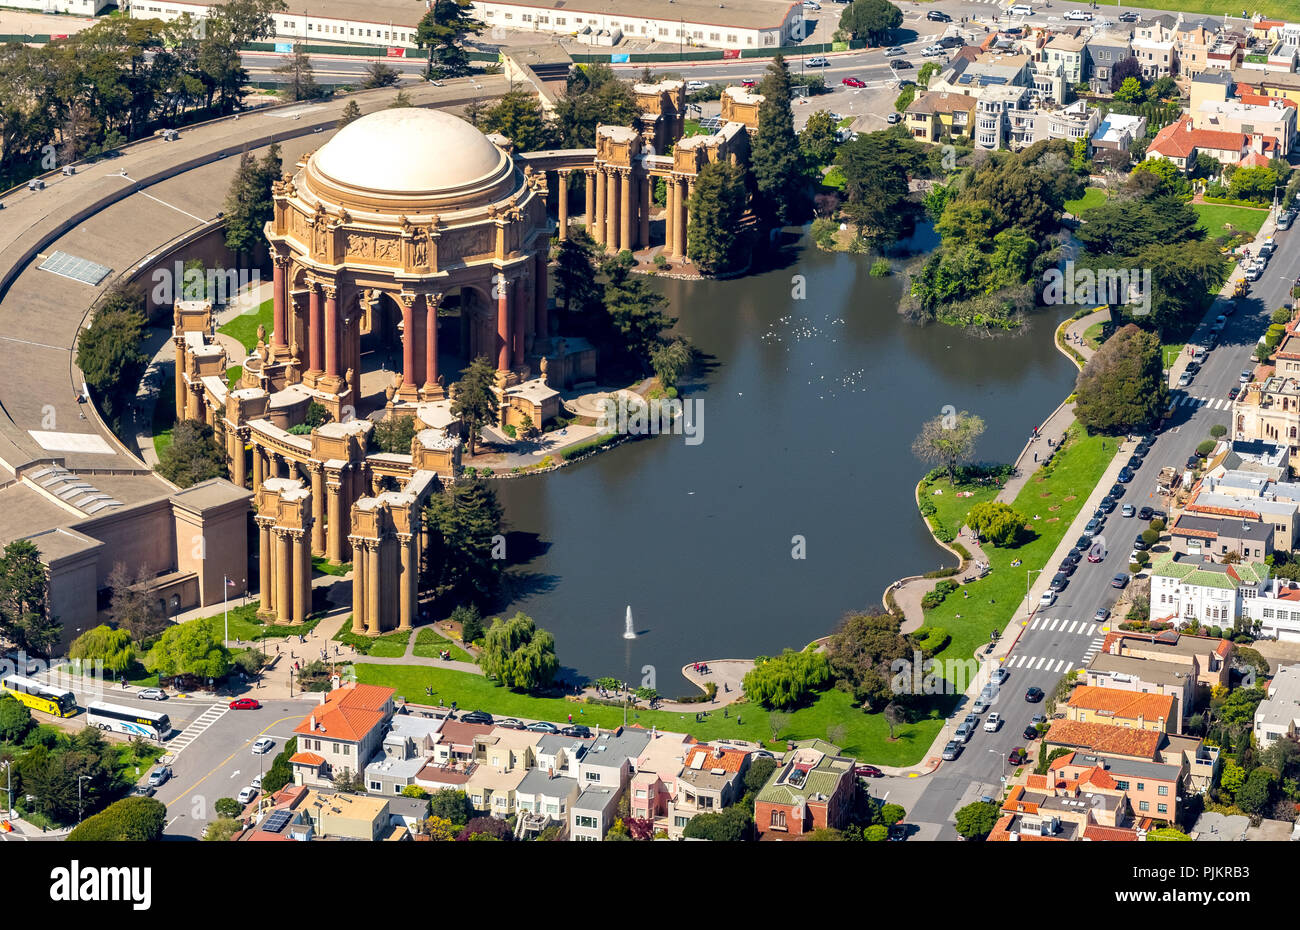 Palast der Schönen Künste, Presidio, Theater, San Francisco, San Francisco Bay Area, Vereinigte Staaten von Amerika, Washington, United States Stockfoto